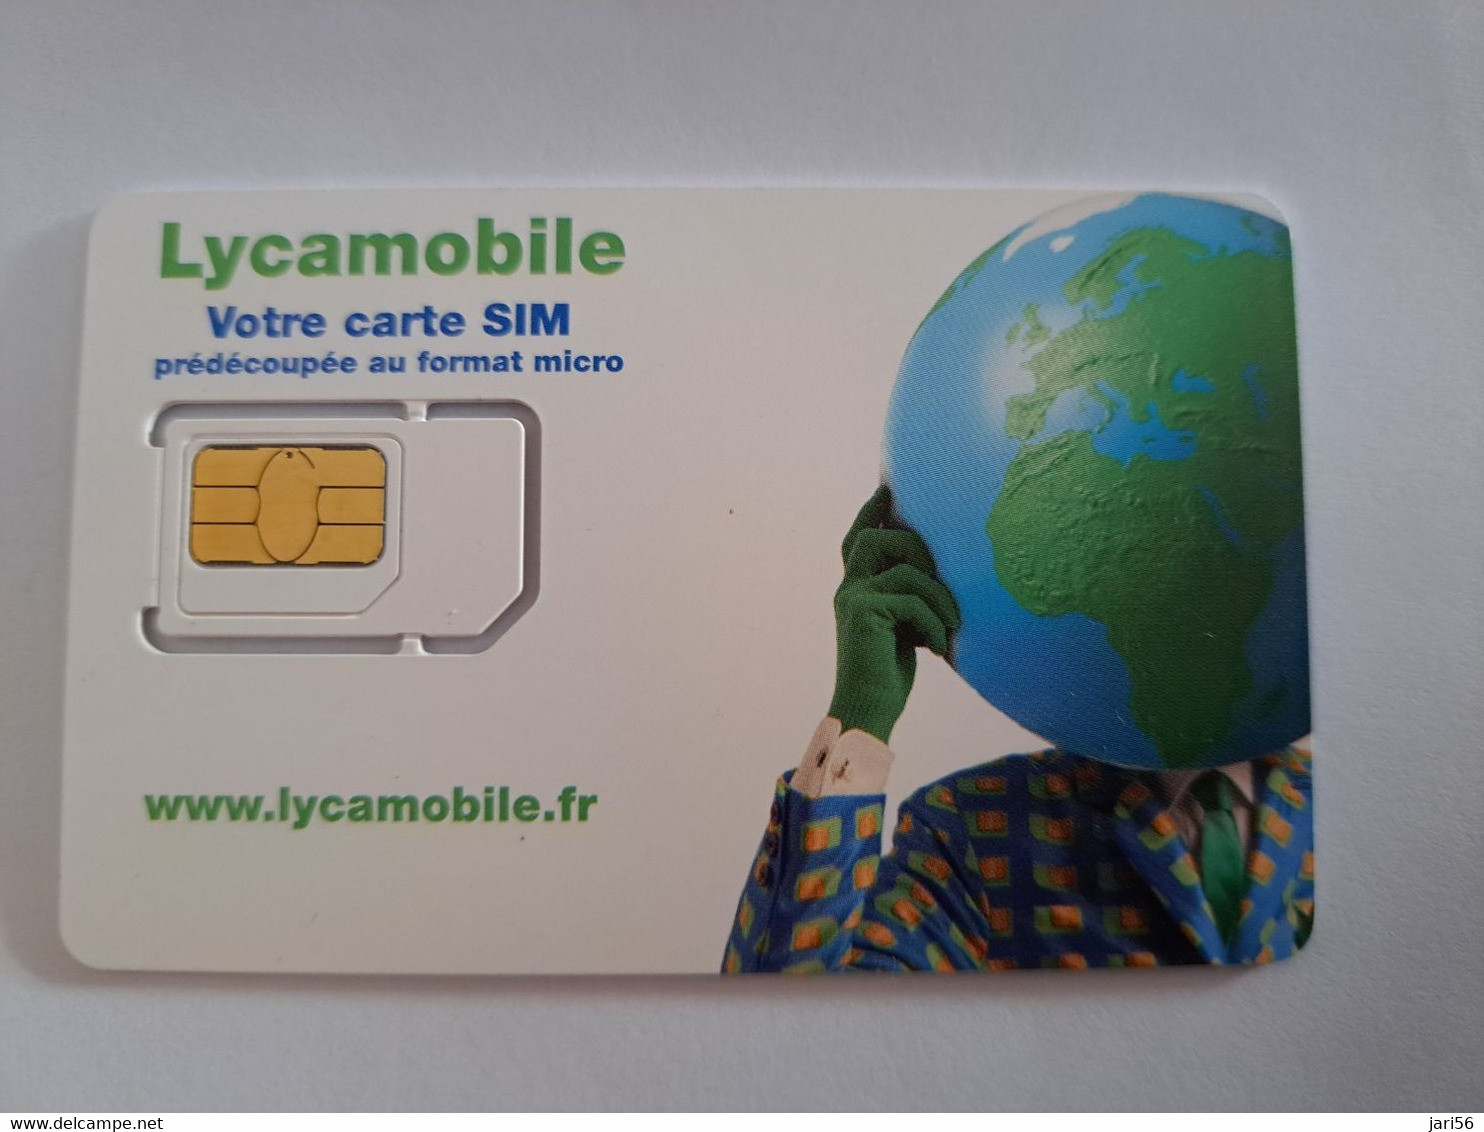 FRANCE/FRANKRIJK   SIM  GSM  LYCAMOBILE / VOTRE CARTE SIM    MOBILE  /  WITH CHIP   / MINT   ** 10608 ** - Voorafbetaalde Kaarten: Gsm